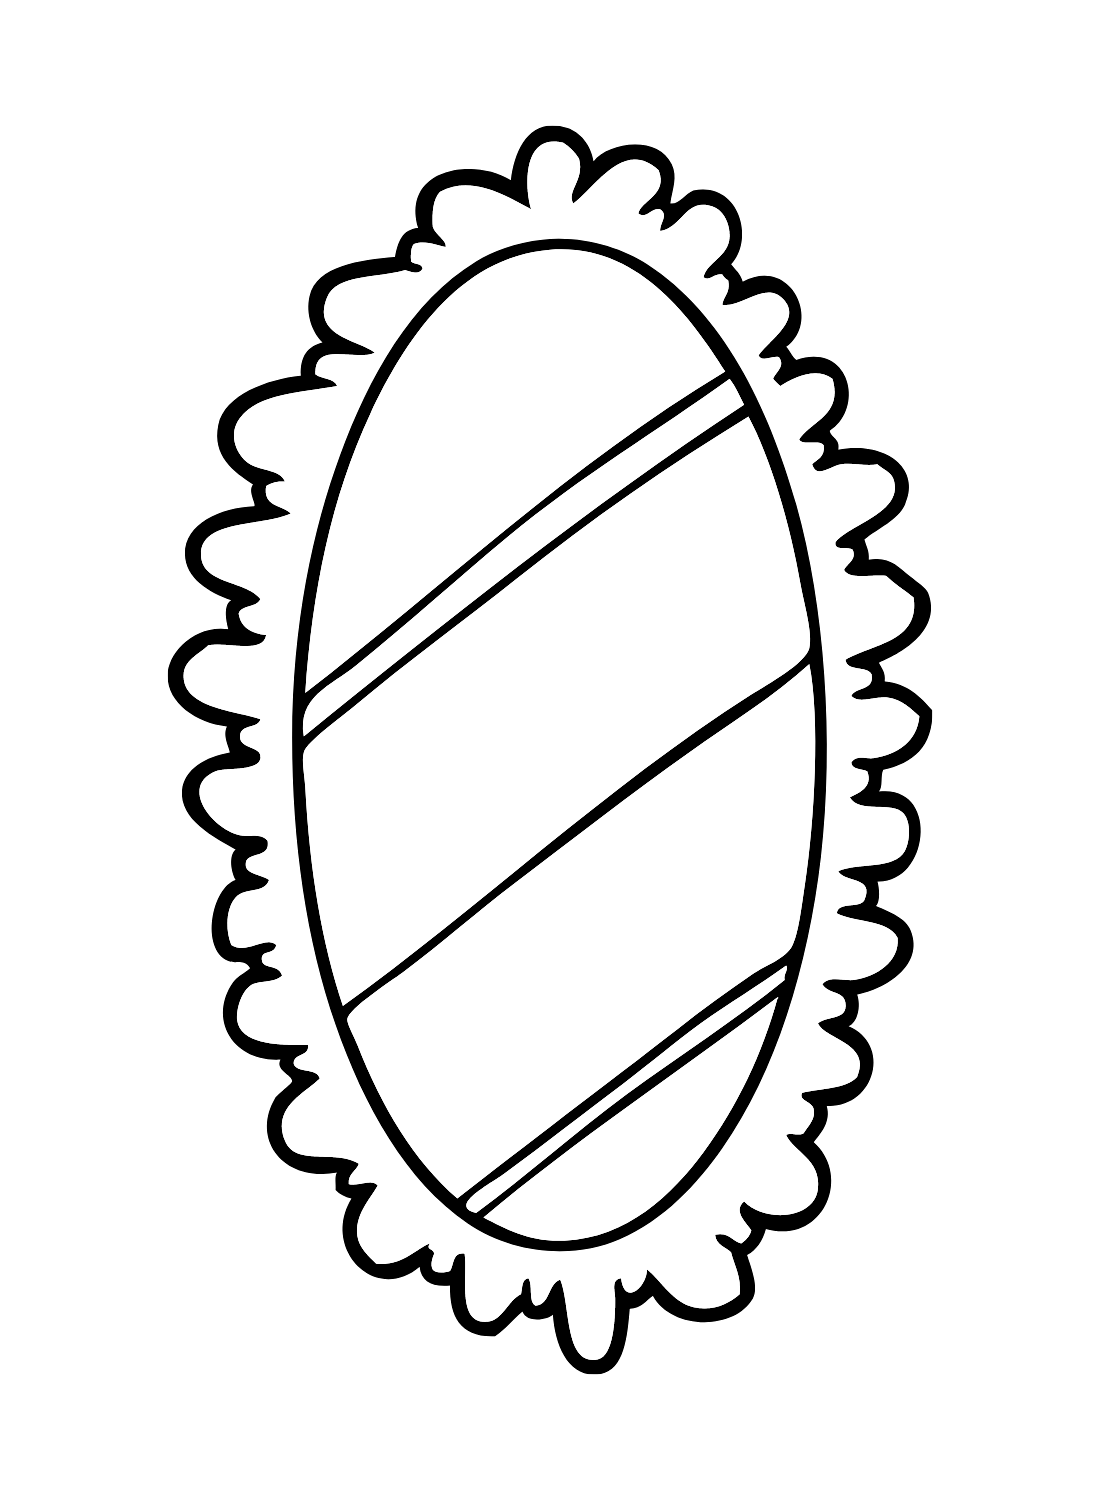 Espelho para impressão grátis do Mirror